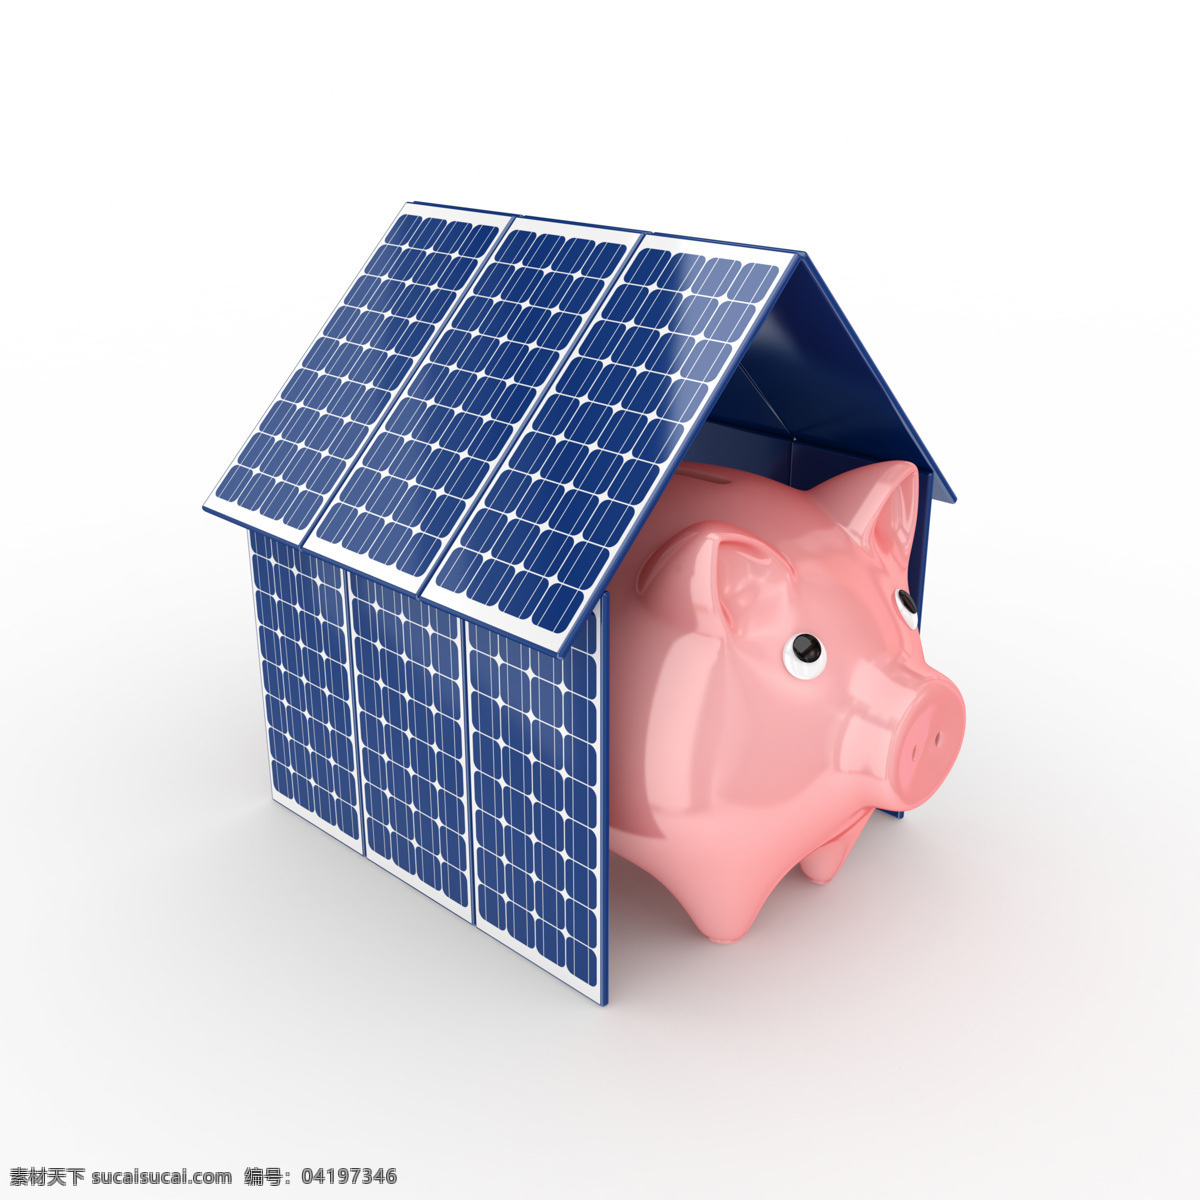 太阳能 房子 小 猪 存钱罐 电池板 节能环保 绿色环保 能量板 小猪存钱罐 其他类别 生活百科 白色